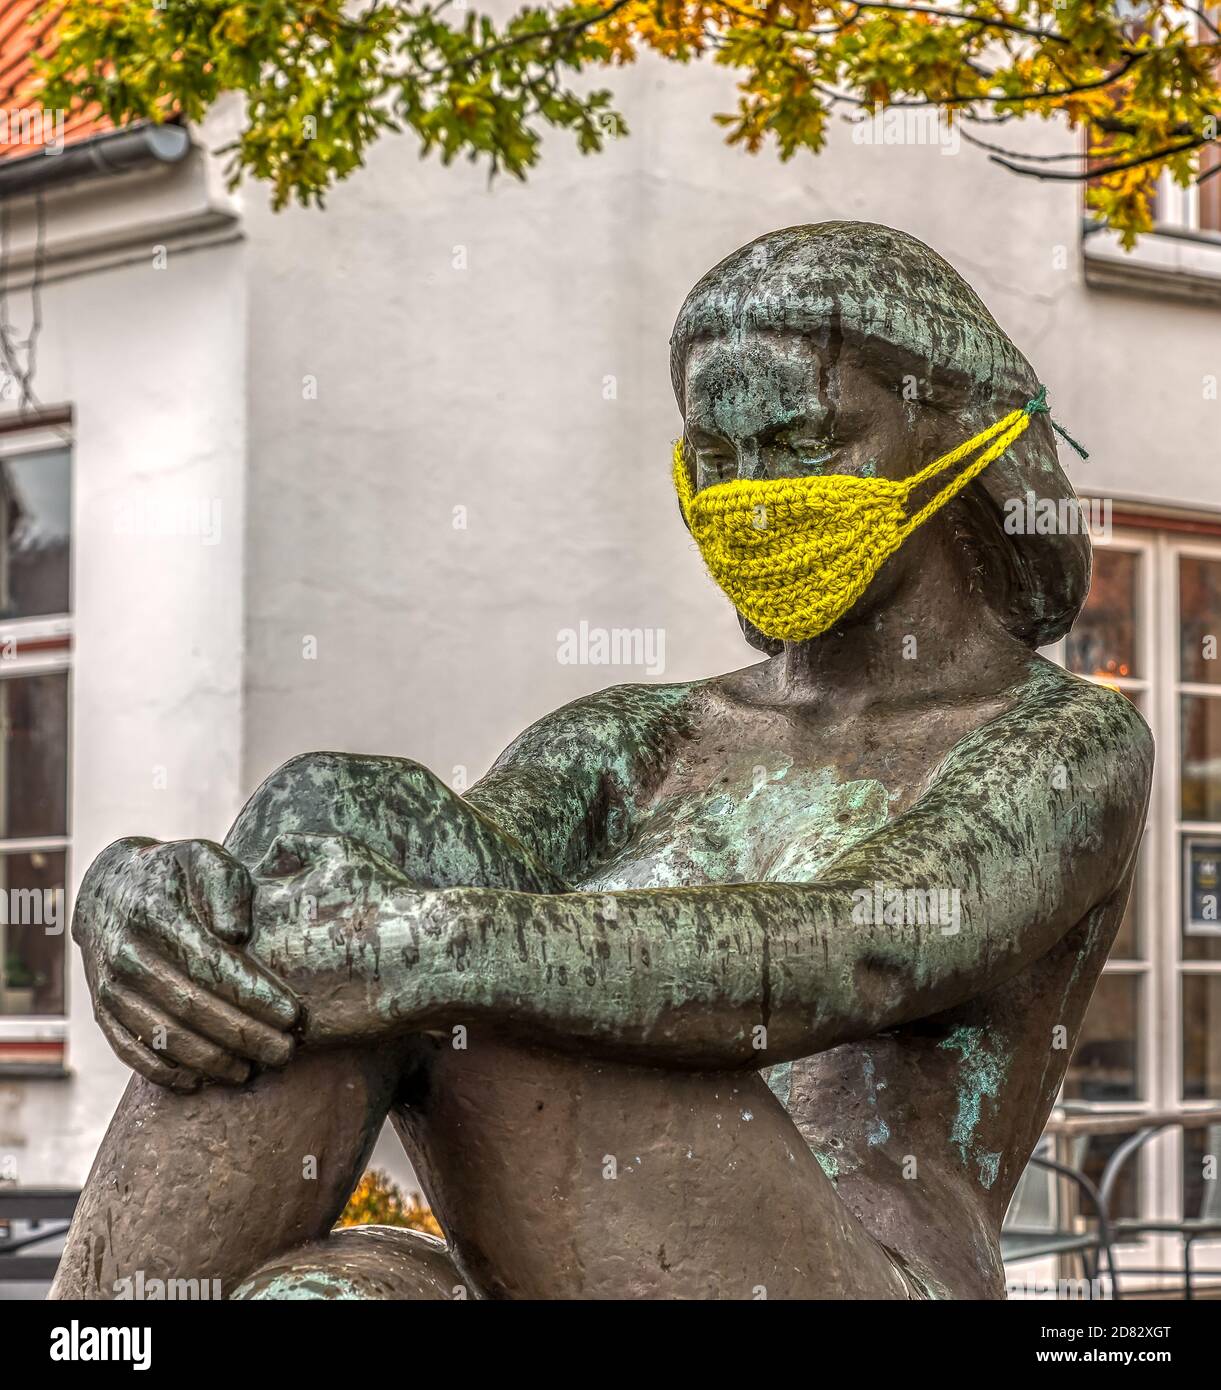 Statua in bronzo di una ragazza seduta che indossa una maschera gialla a maglia contro covid-19, Frederikssund, Danimarca, 26 ottobre 2020 Foto Stock